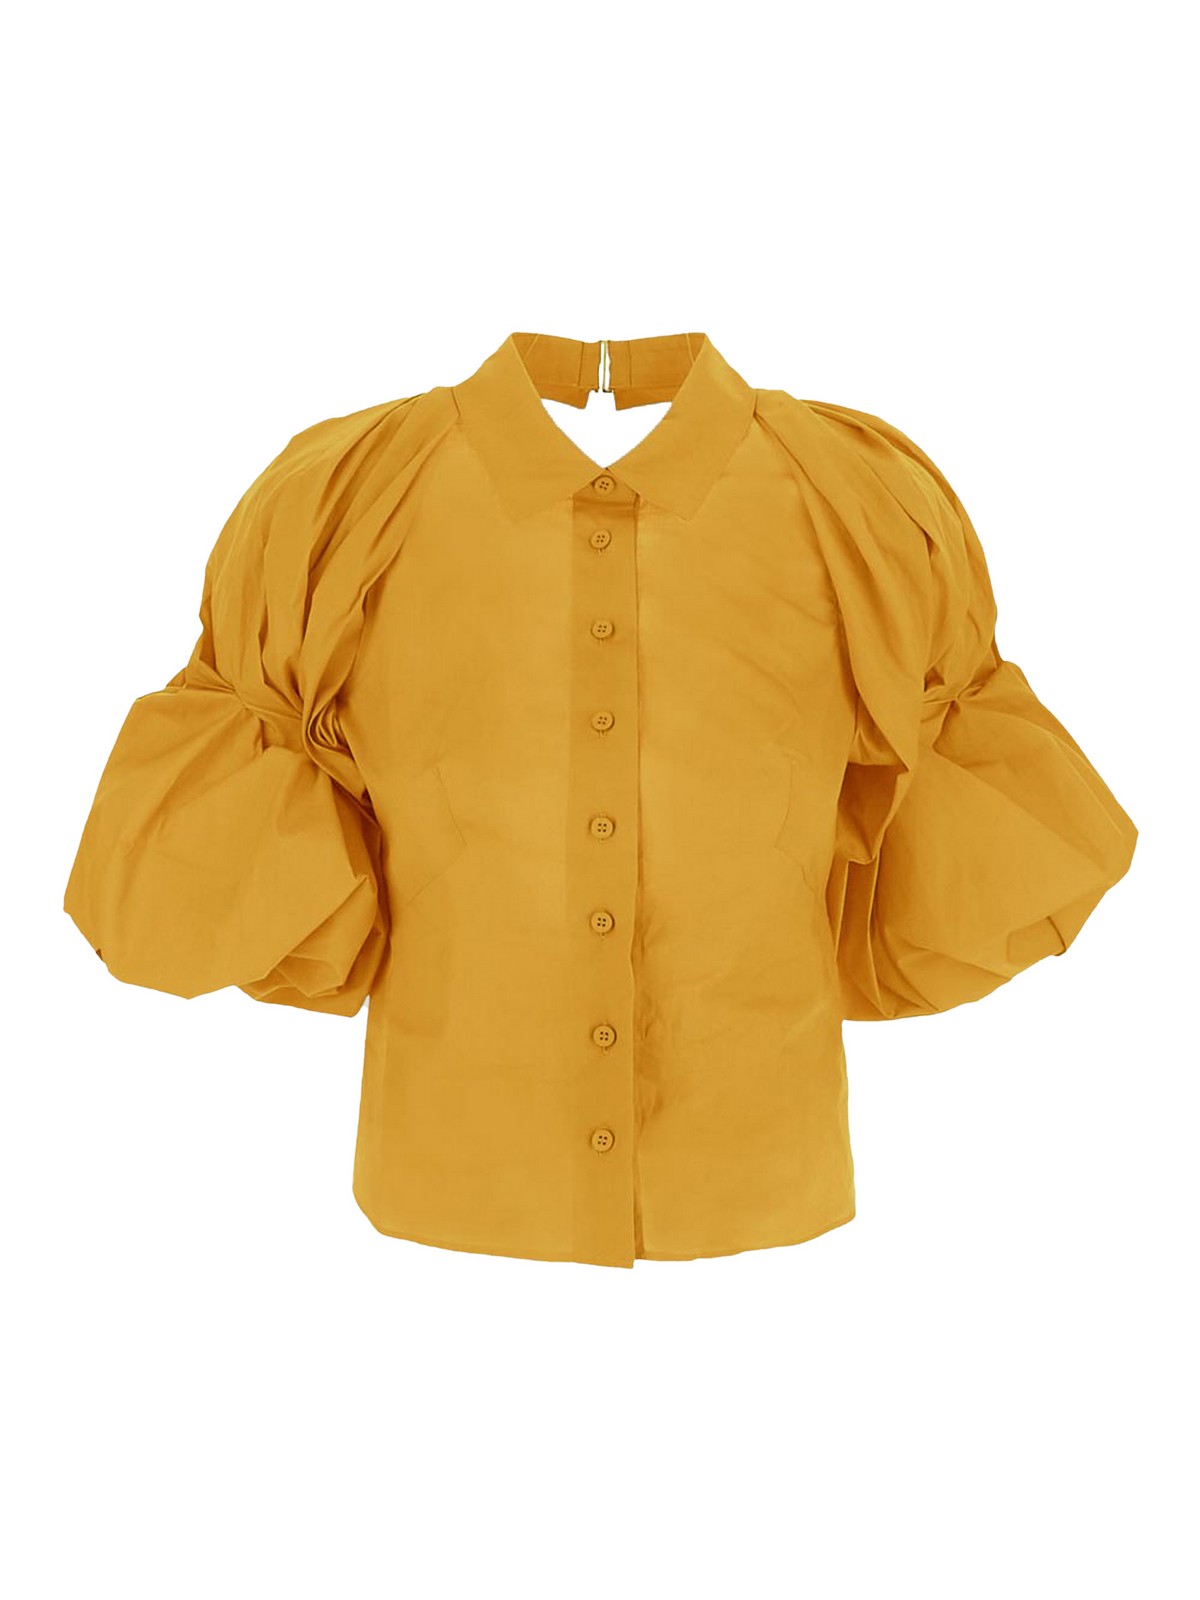 Jacquemus Shirt In Yellow